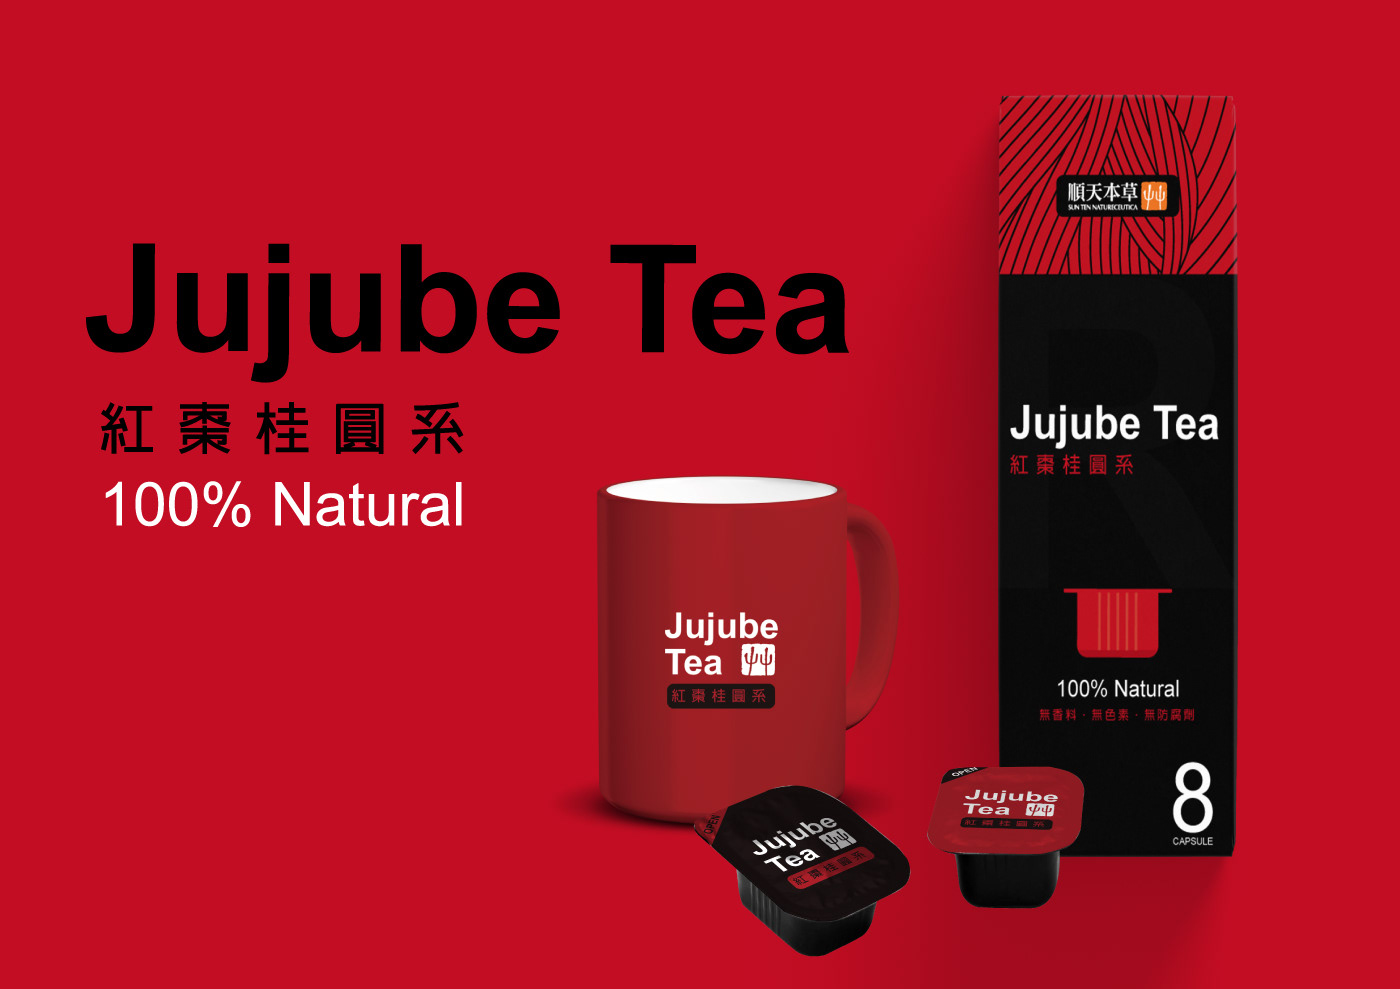 包裝設計 capsule TEA healthy food Herb herb tea natural tea